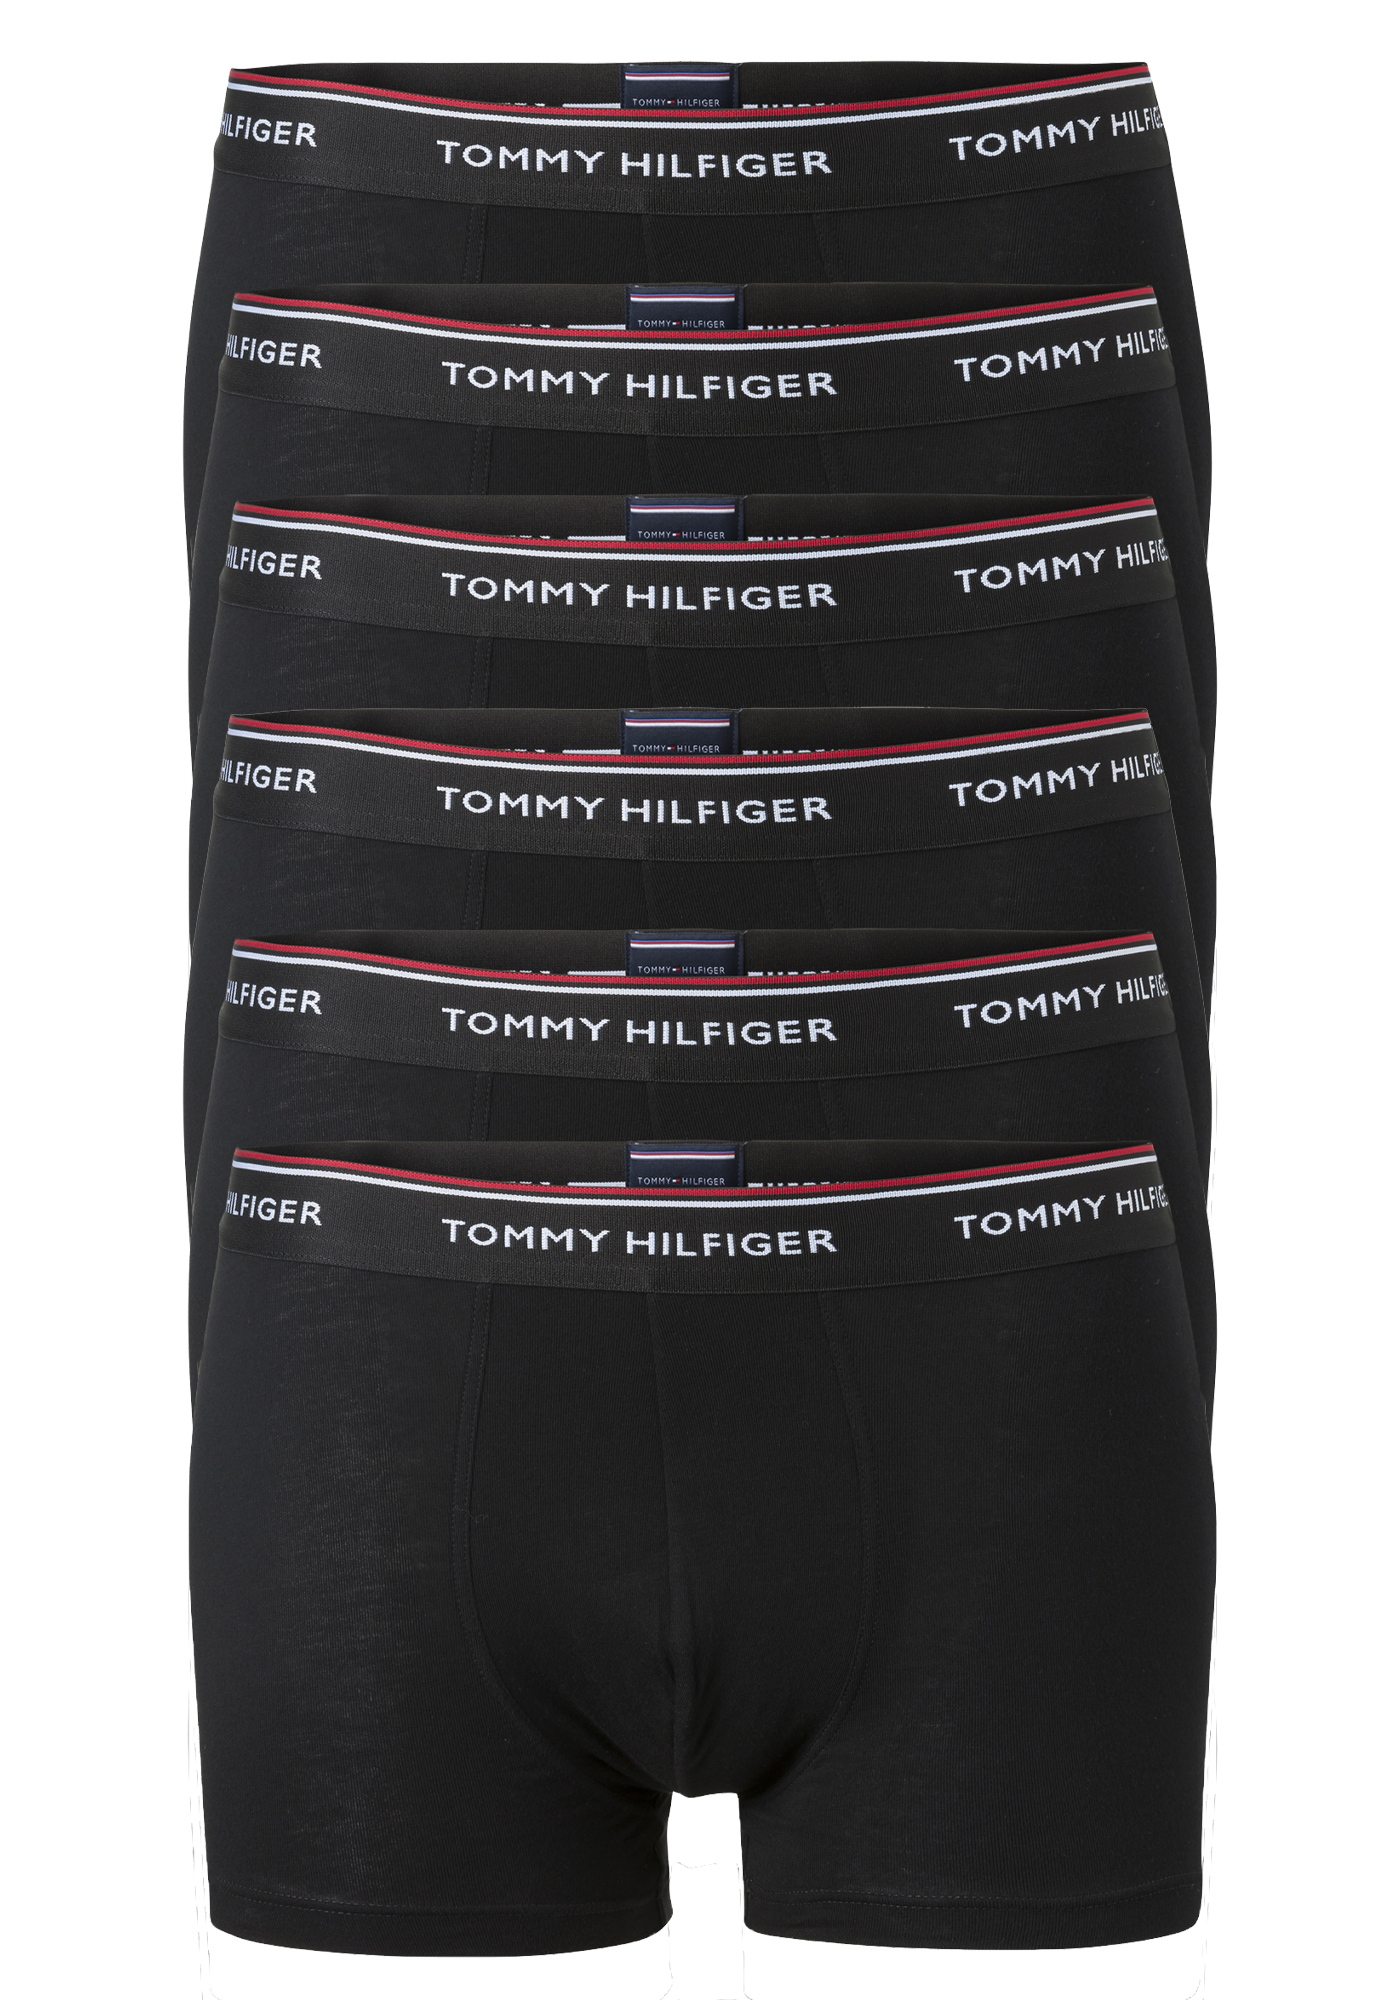 op tijd Luxe Tegenslag Tommy Hilfiger trunks (2x 3-pack), heren boxers normale lengte, zwart -  Zomer SALE tot 50% korting